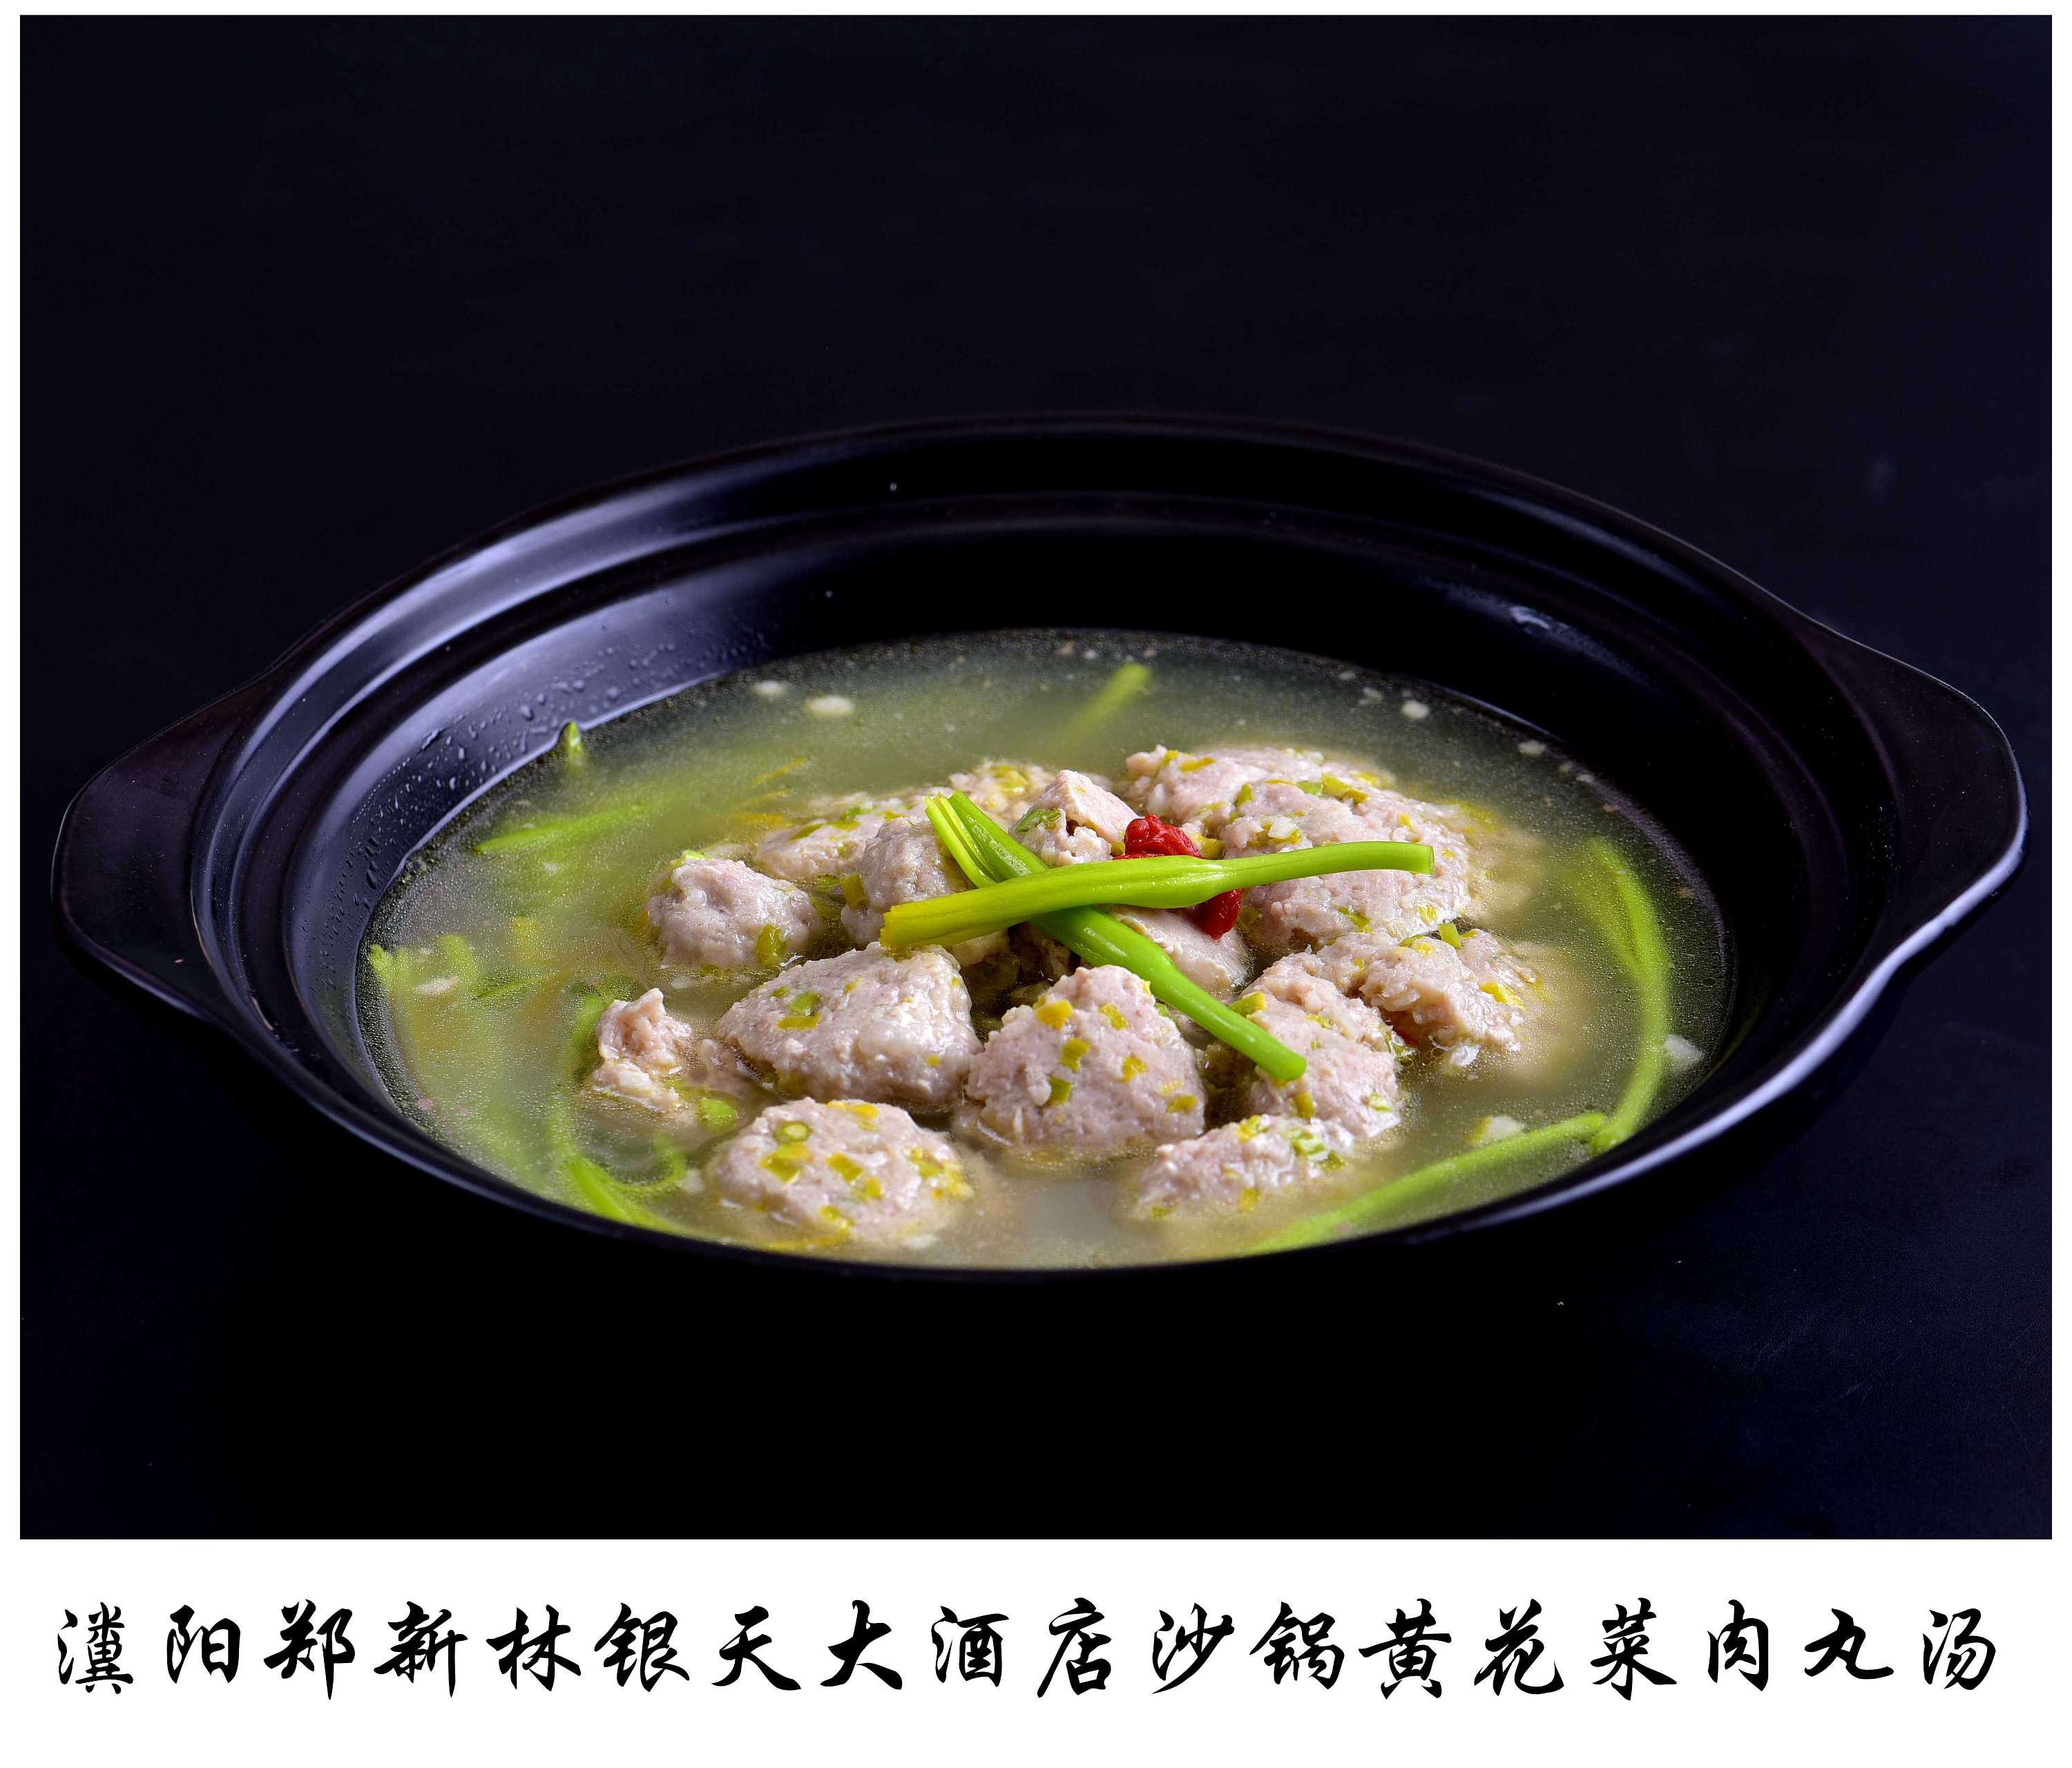 虾砂锅粥怎么做好吃_砂锅虾粥的做法大全简单窍门_砂锅基围虾粥的做法